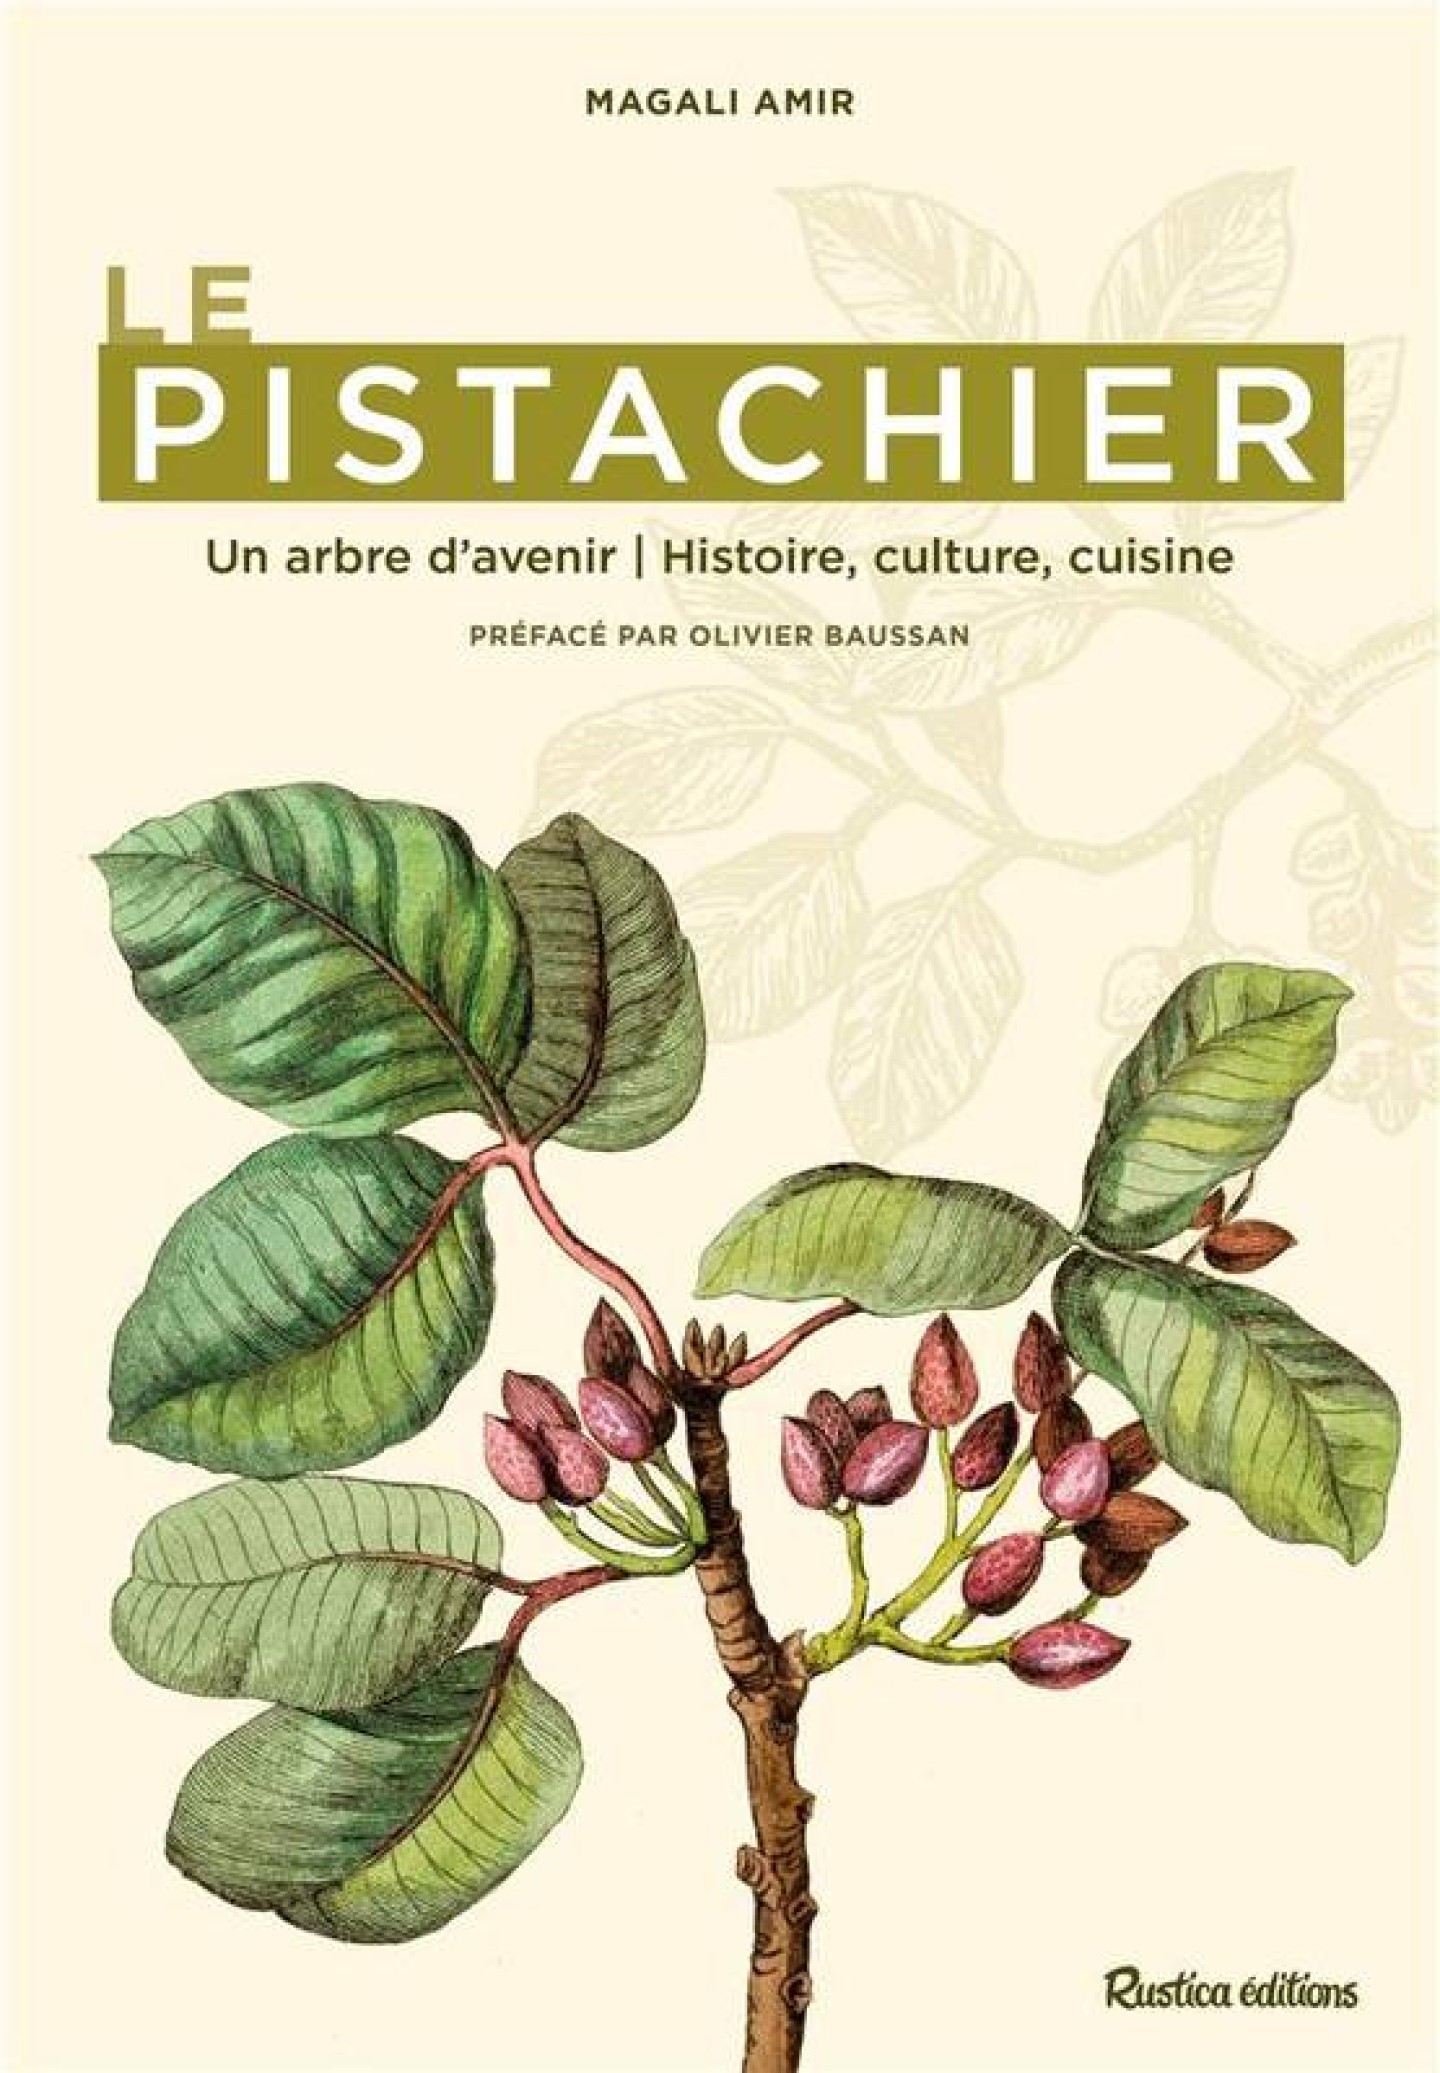 Le Pistachier, un arbre d'avenir de Magali Amir